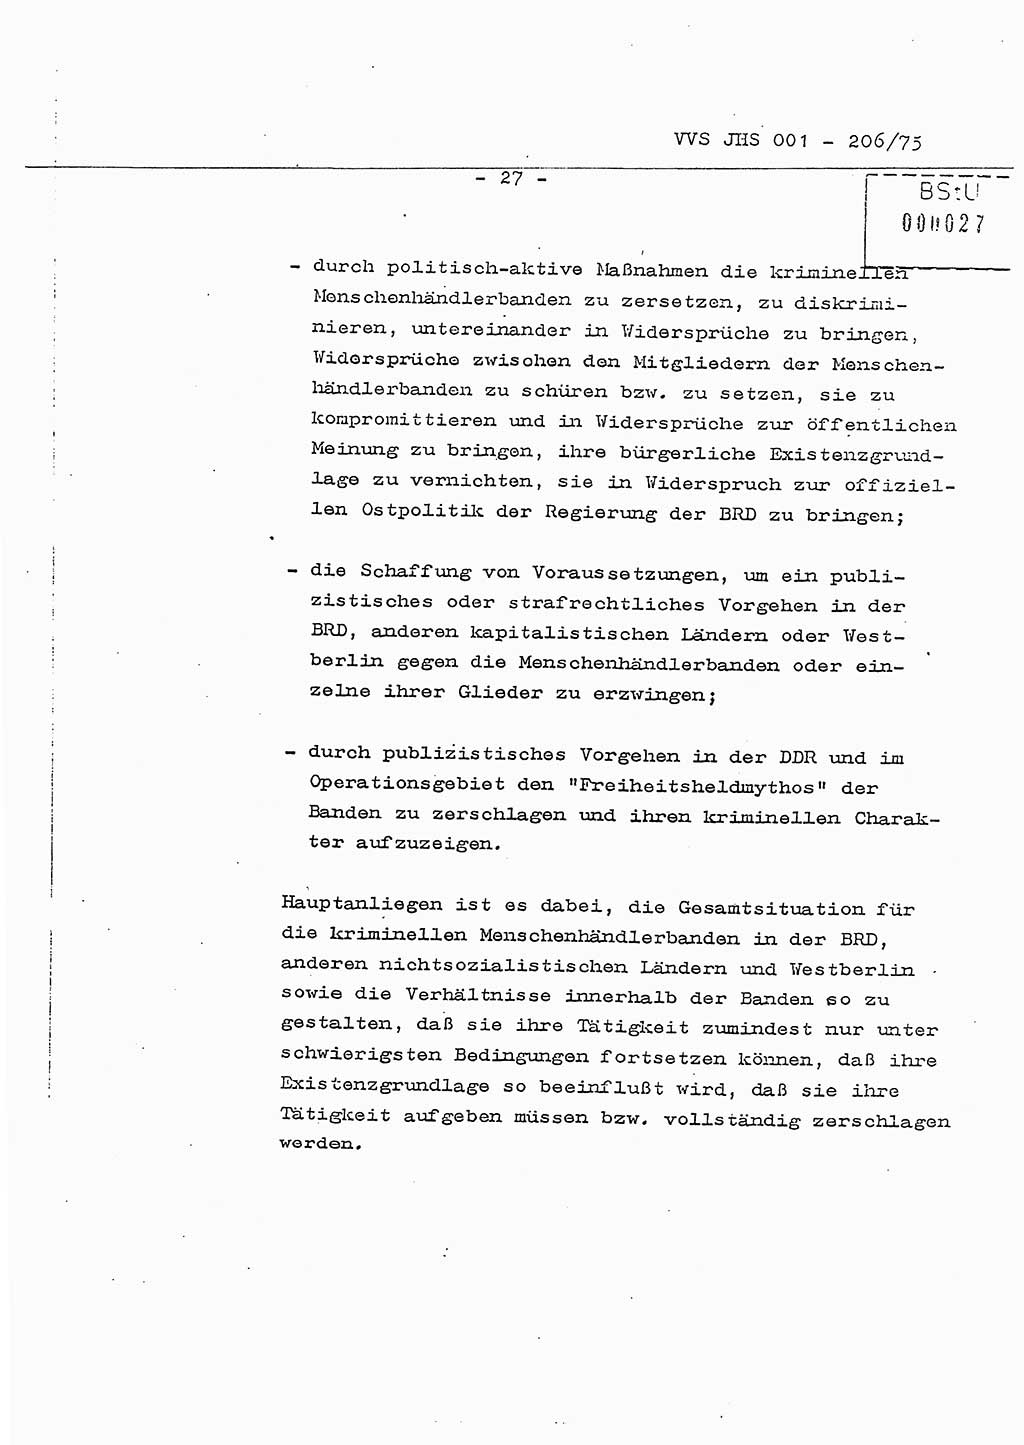 Dissertation Generalmajor Manfred Hummitzsch (Leiter der BV Leipzig), Generalmajor Heinz Fiedler (HA Ⅵ), Oberst Rolf Fister (HA Ⅸ), Ministerium für Staatssicherheit (MfS) [Deutsche Demokratische Republik (DDR)], Juristische Hochschule (JHS), Vertrauliche Verschlußsache (VVS) 001-206/75, Potsdam 1975, Seite 27 (Diss. MfS DDR JHS VVS 001-206/75 1975, S. 27)